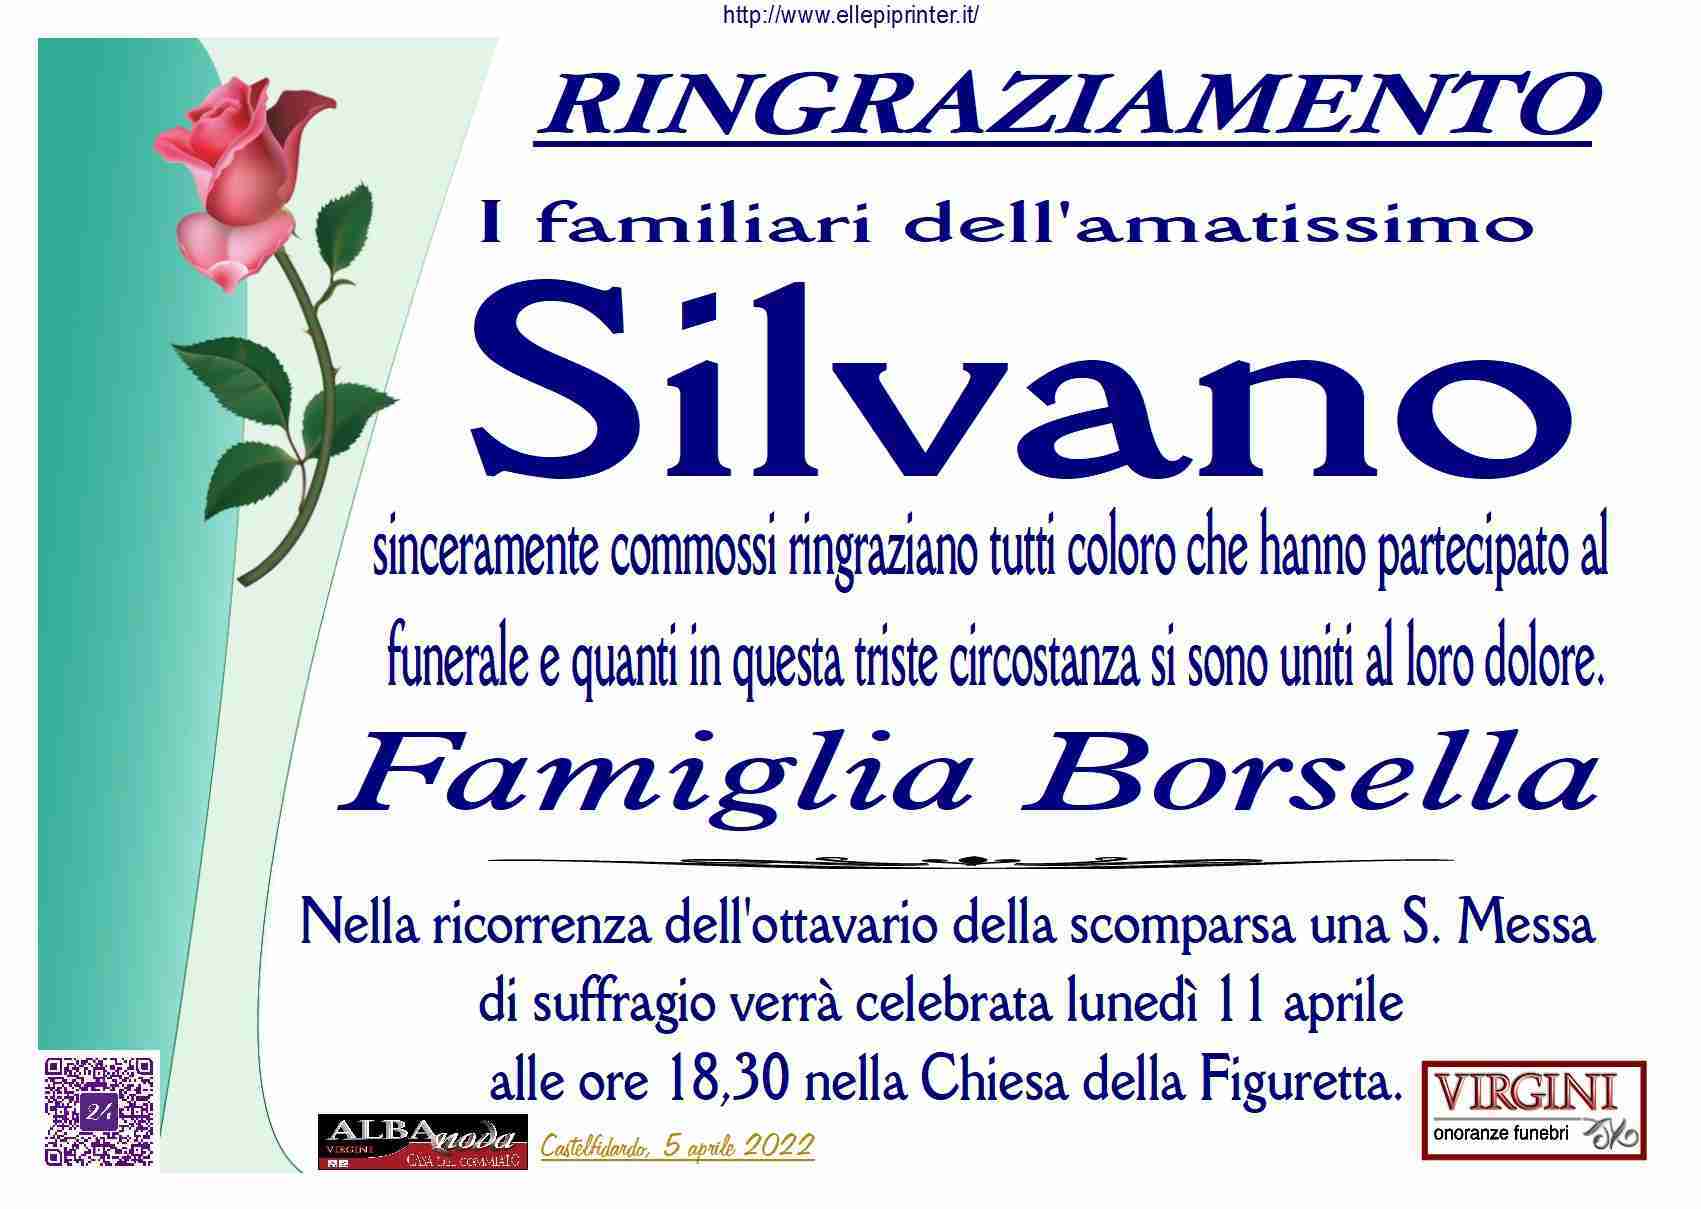 Silvano Borsella